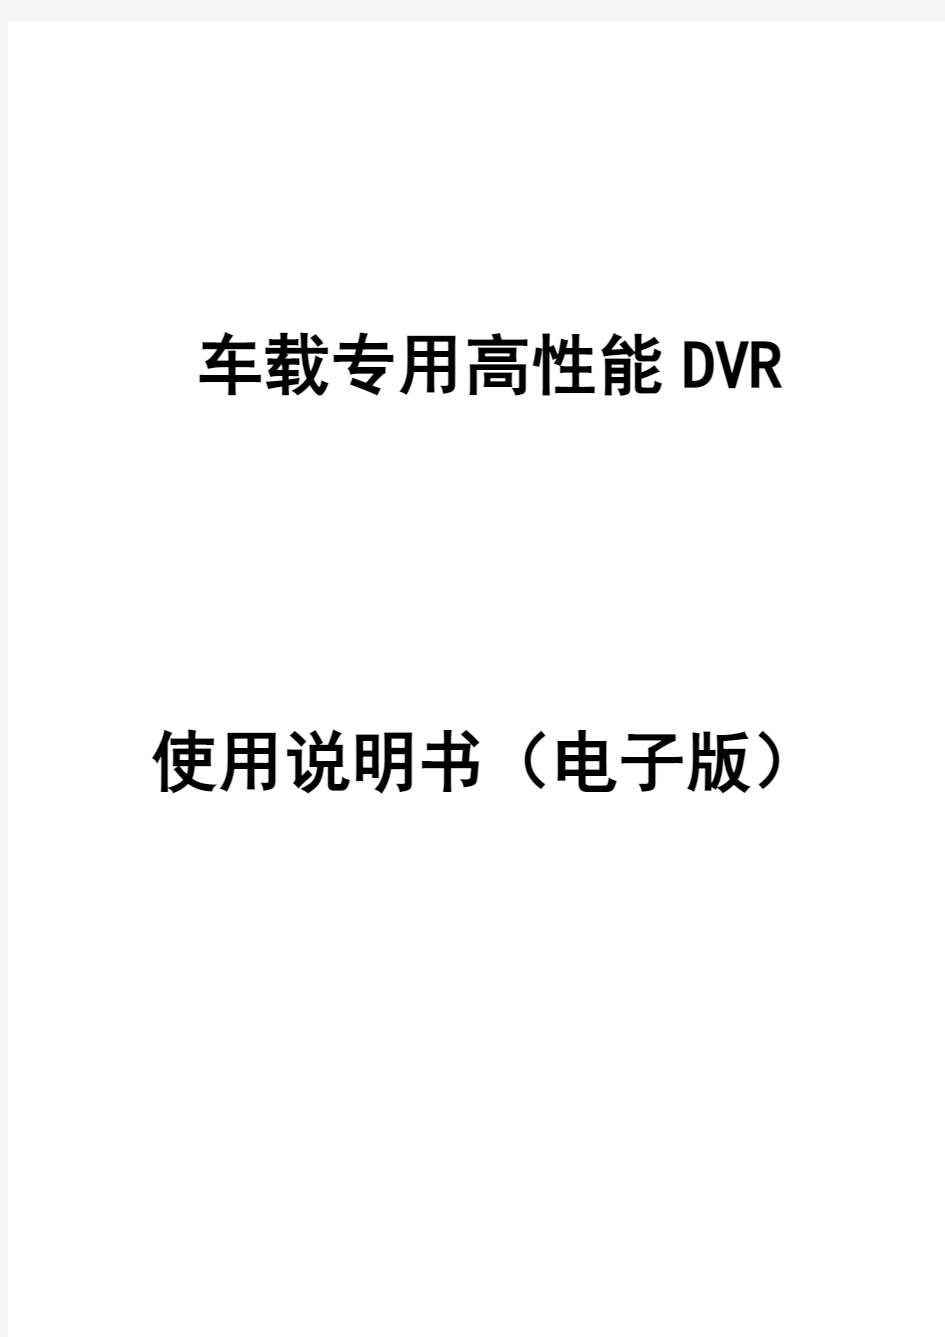 车载DVR说明书V30(中文版)